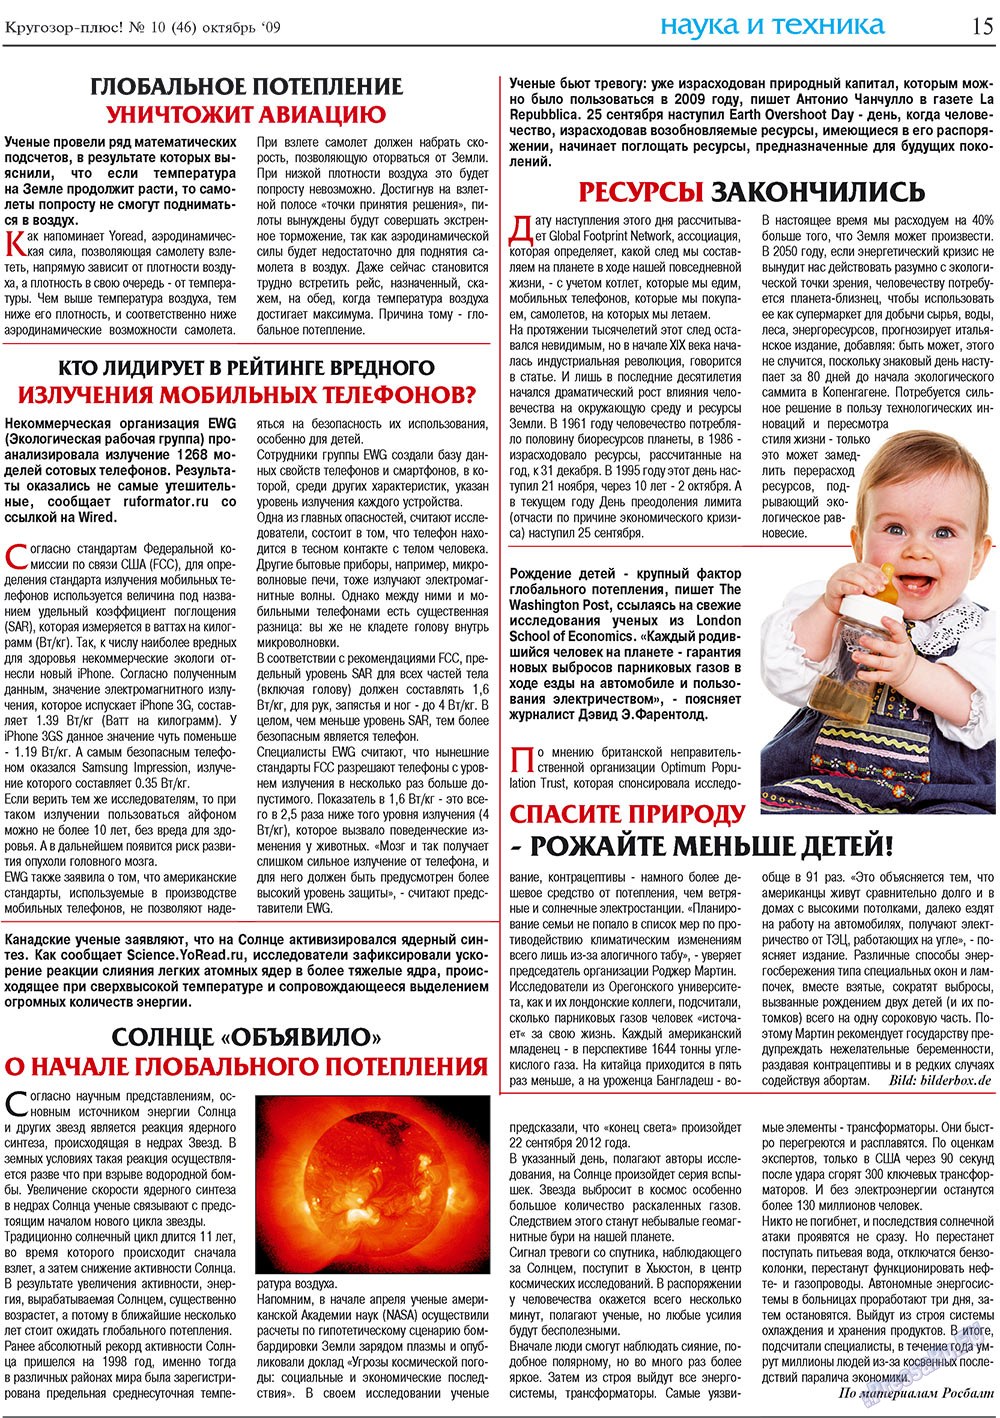 Кругозор плюс!, газета. 2009 №10 стр.15